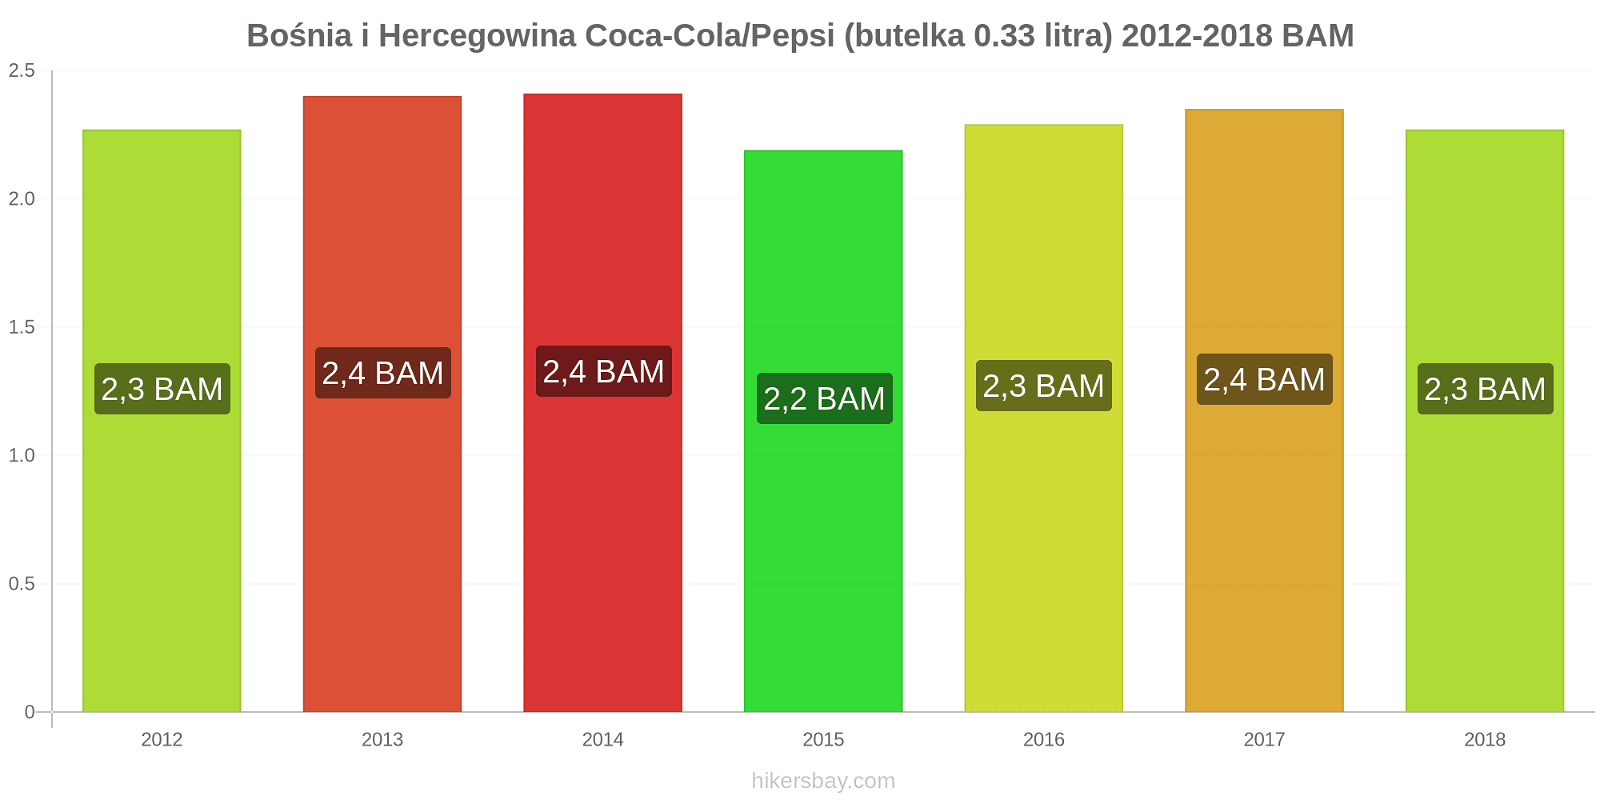 Bośnia i Hercegowina zmiany cen Coca-Cola/Pepsi (butelka 0.33 litra) hikersbay.com